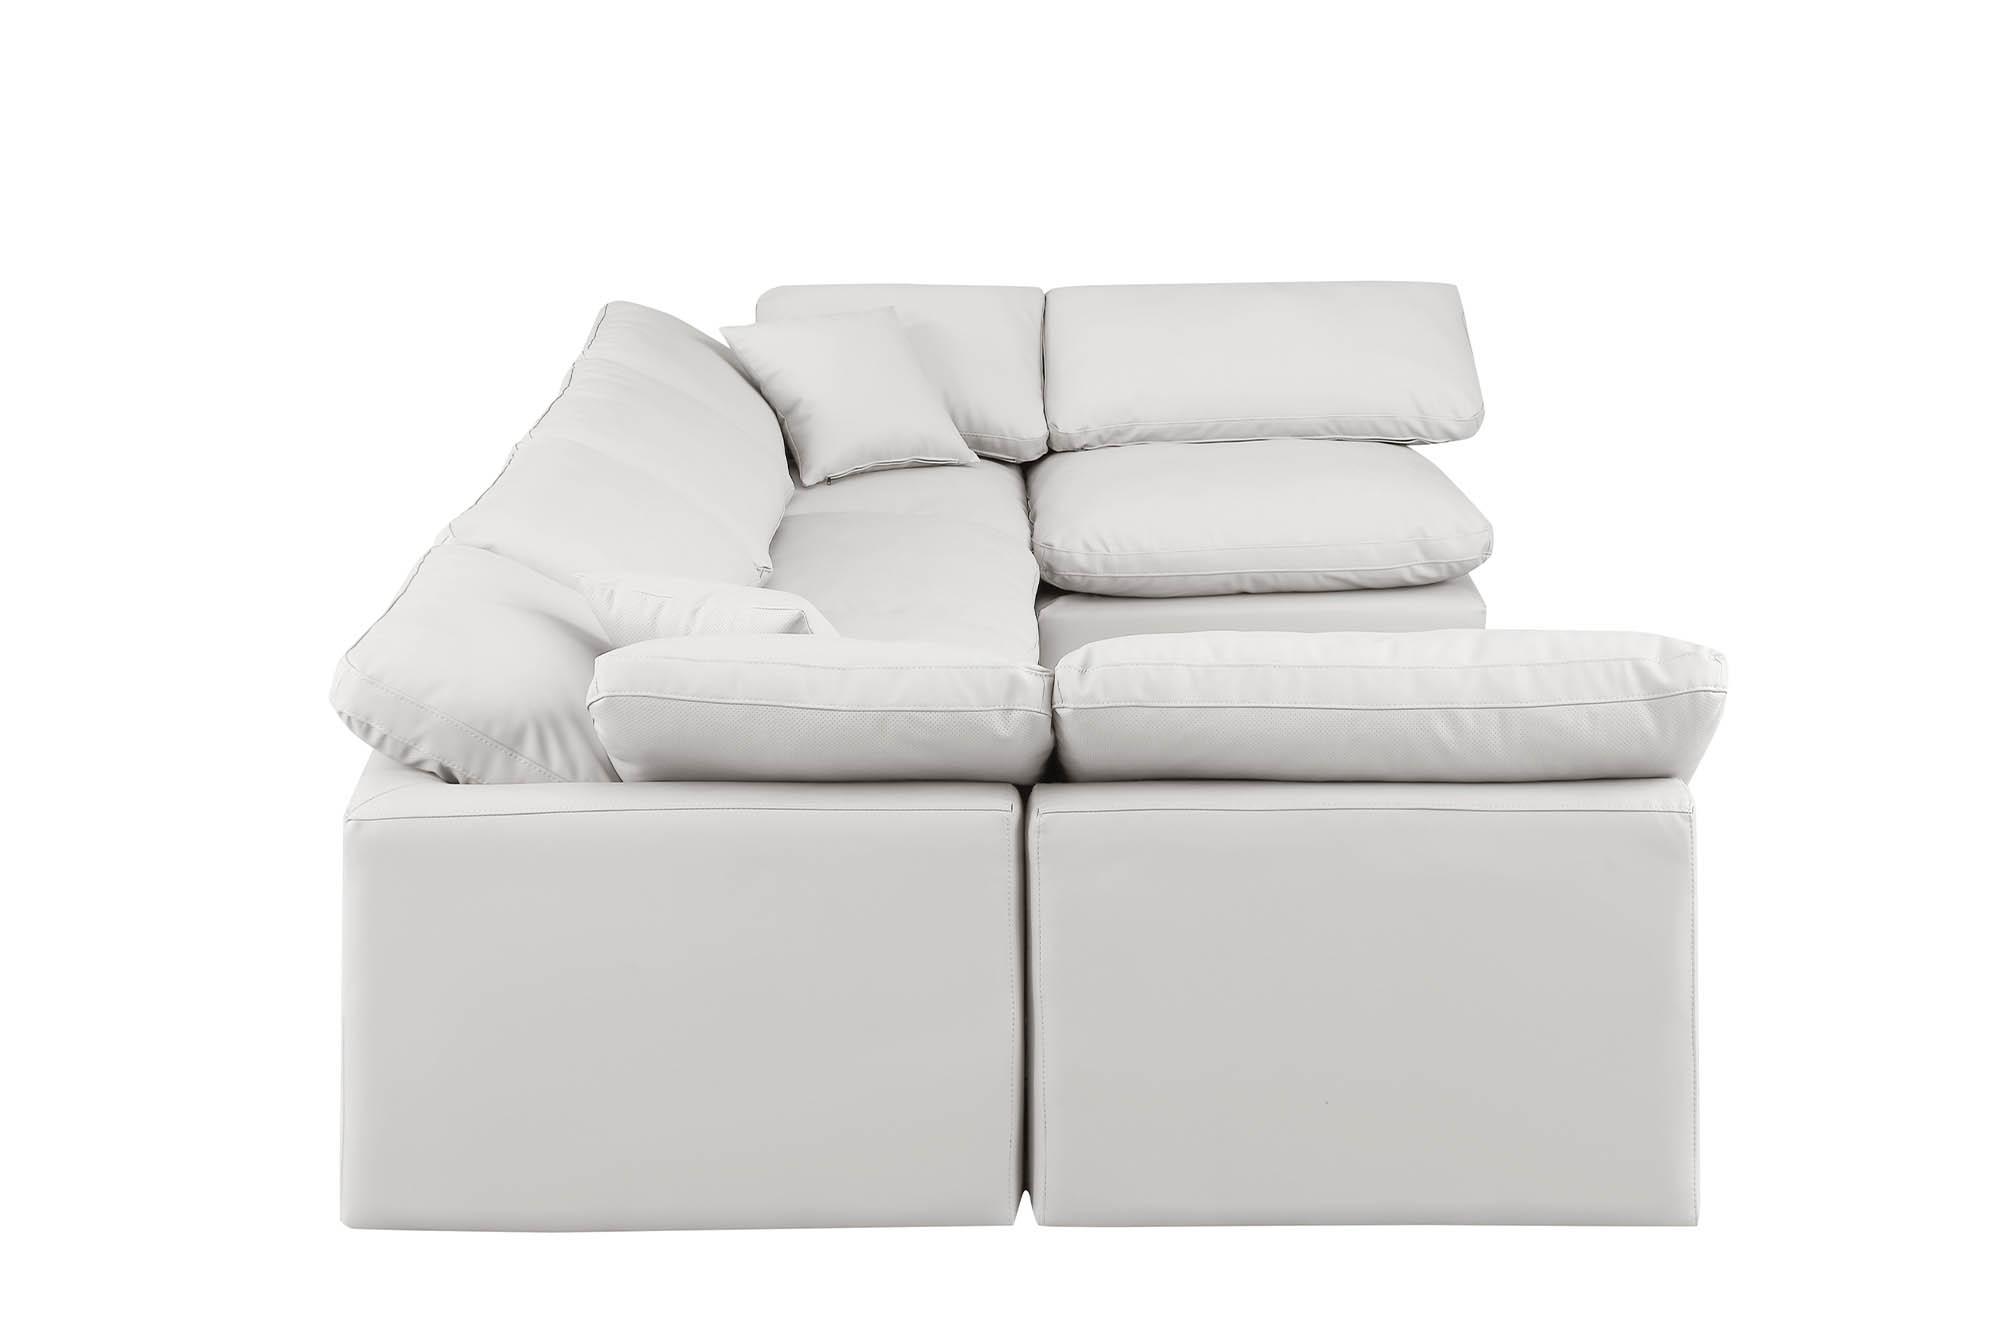 

    
Meridian Furniture INDULGE 146Cream-Sec6D Modular Sectional Sofa Cream 146Cream-Sec6D
